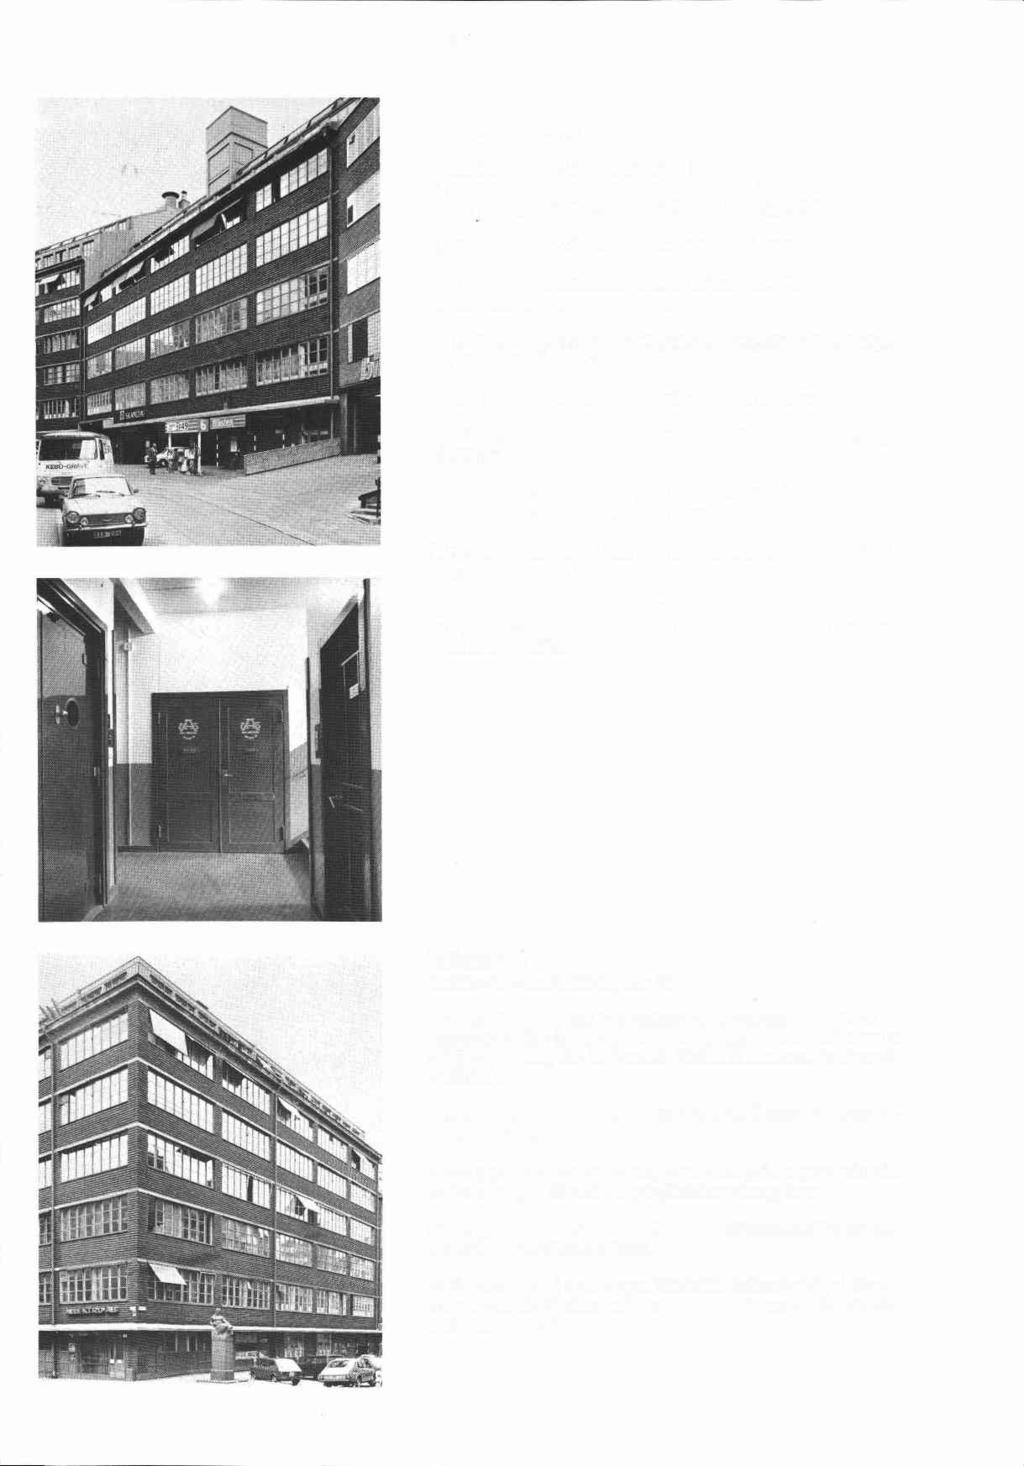 Blästern 3 Hudiksvallsgatan 4.6 Indushianlaggning, inventerad 1977,1979. Byggnadsår 1930-31, arkitekt Ragnar Östberg, byggherre AB Bl&- tem nr 1, byggmästare C E Hellstedt, Kontinuerliga fclrandr.